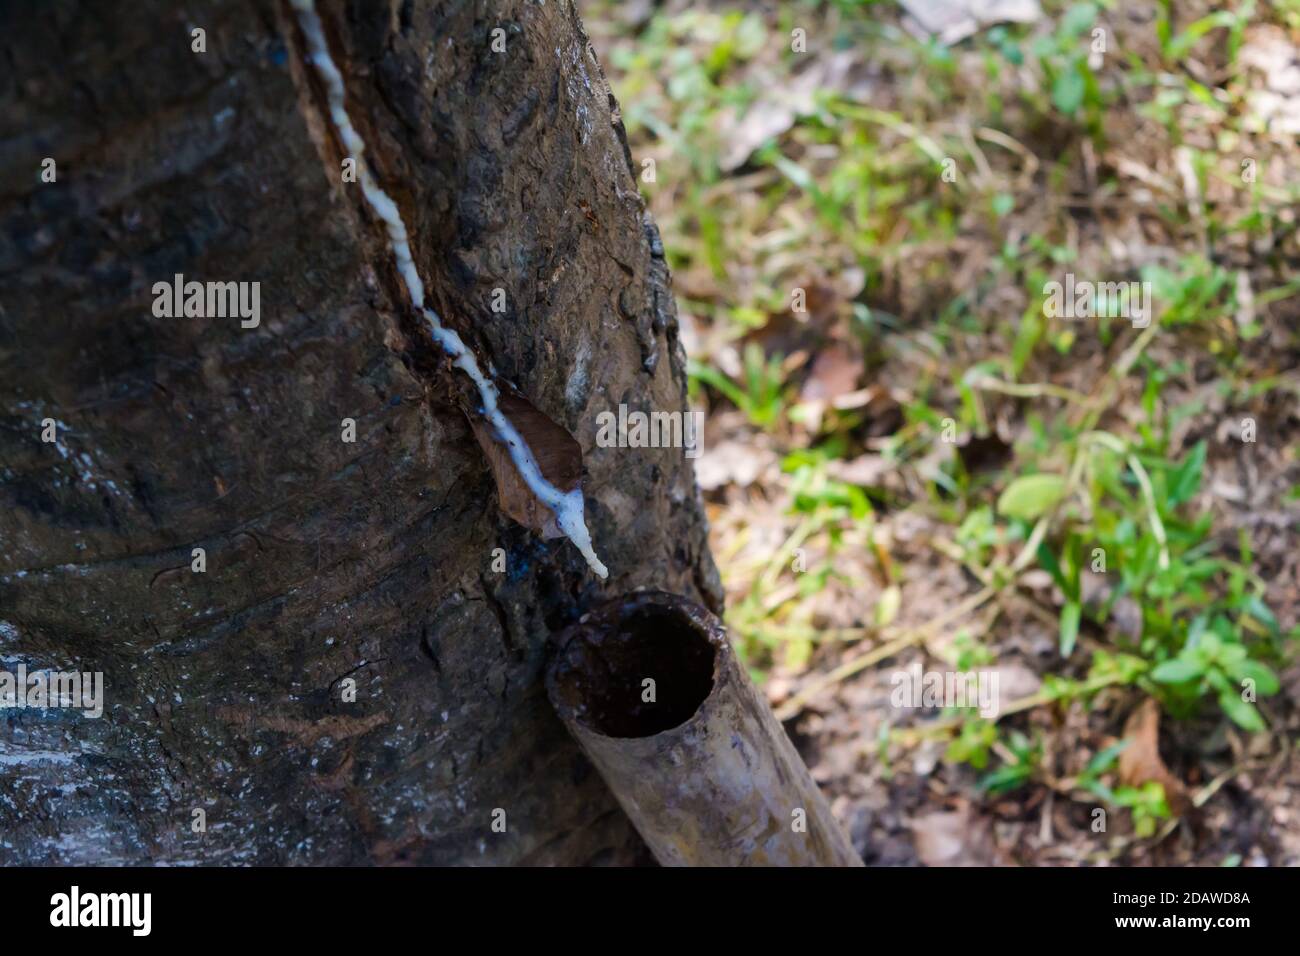 Caoutchouc avec coupes de barre oblique sur une plantation à Assam, Inde. Latex des arbres de caoutchouc. Banque D'Images